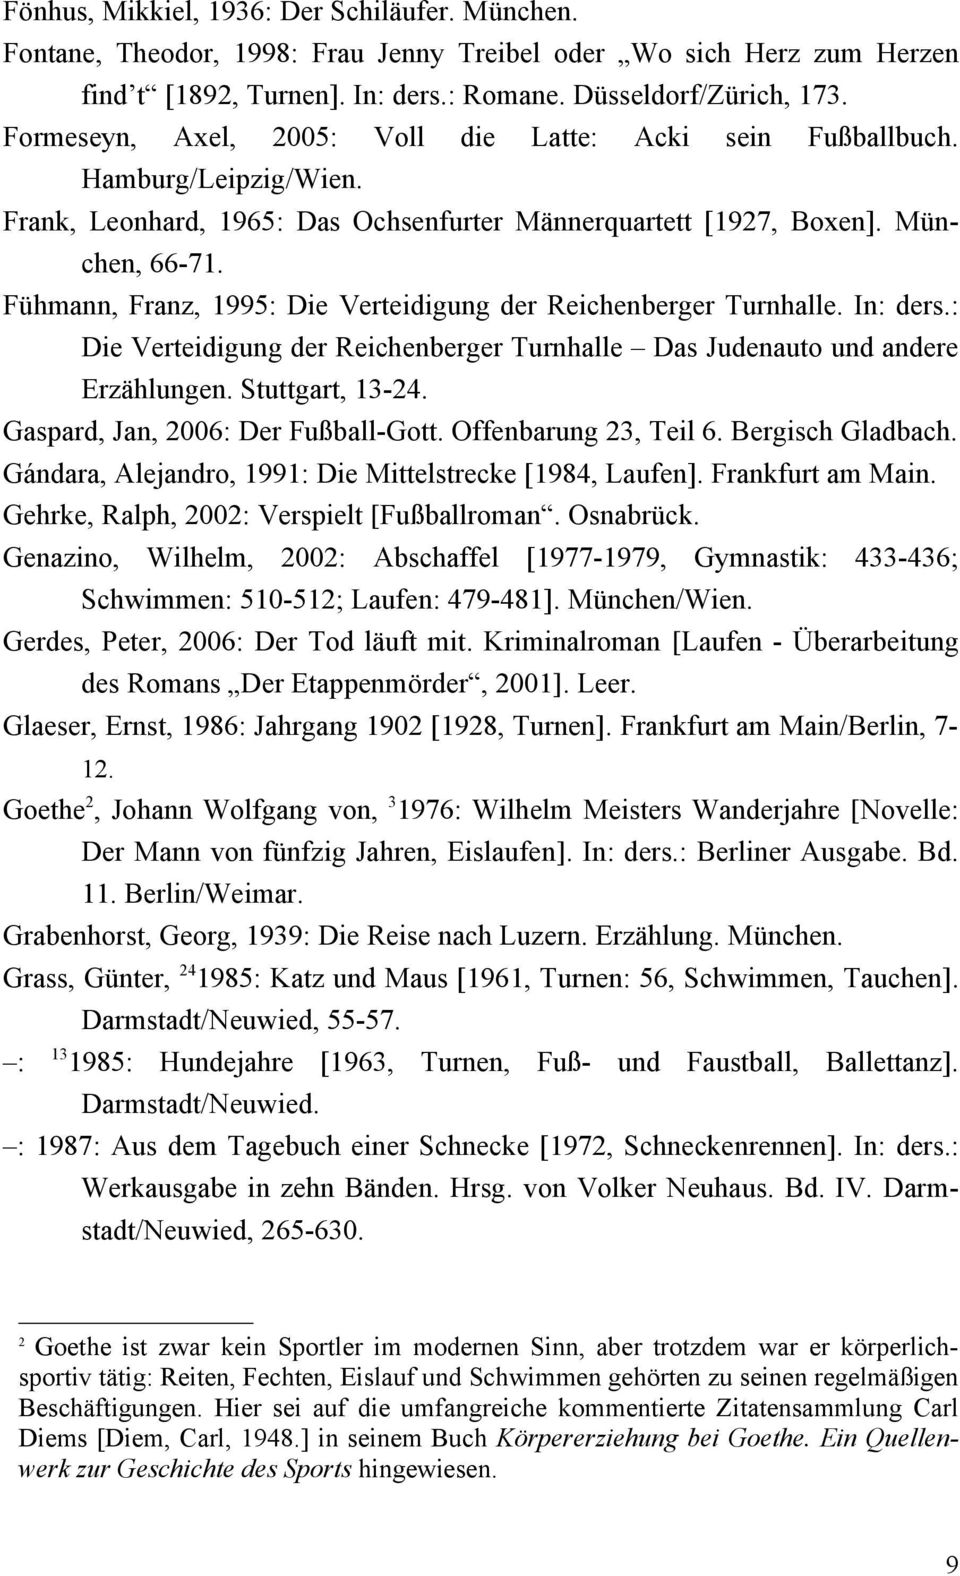 Fühmann Franz 1995 Die Verteidigung der Reichenberger Turnhalle In ders